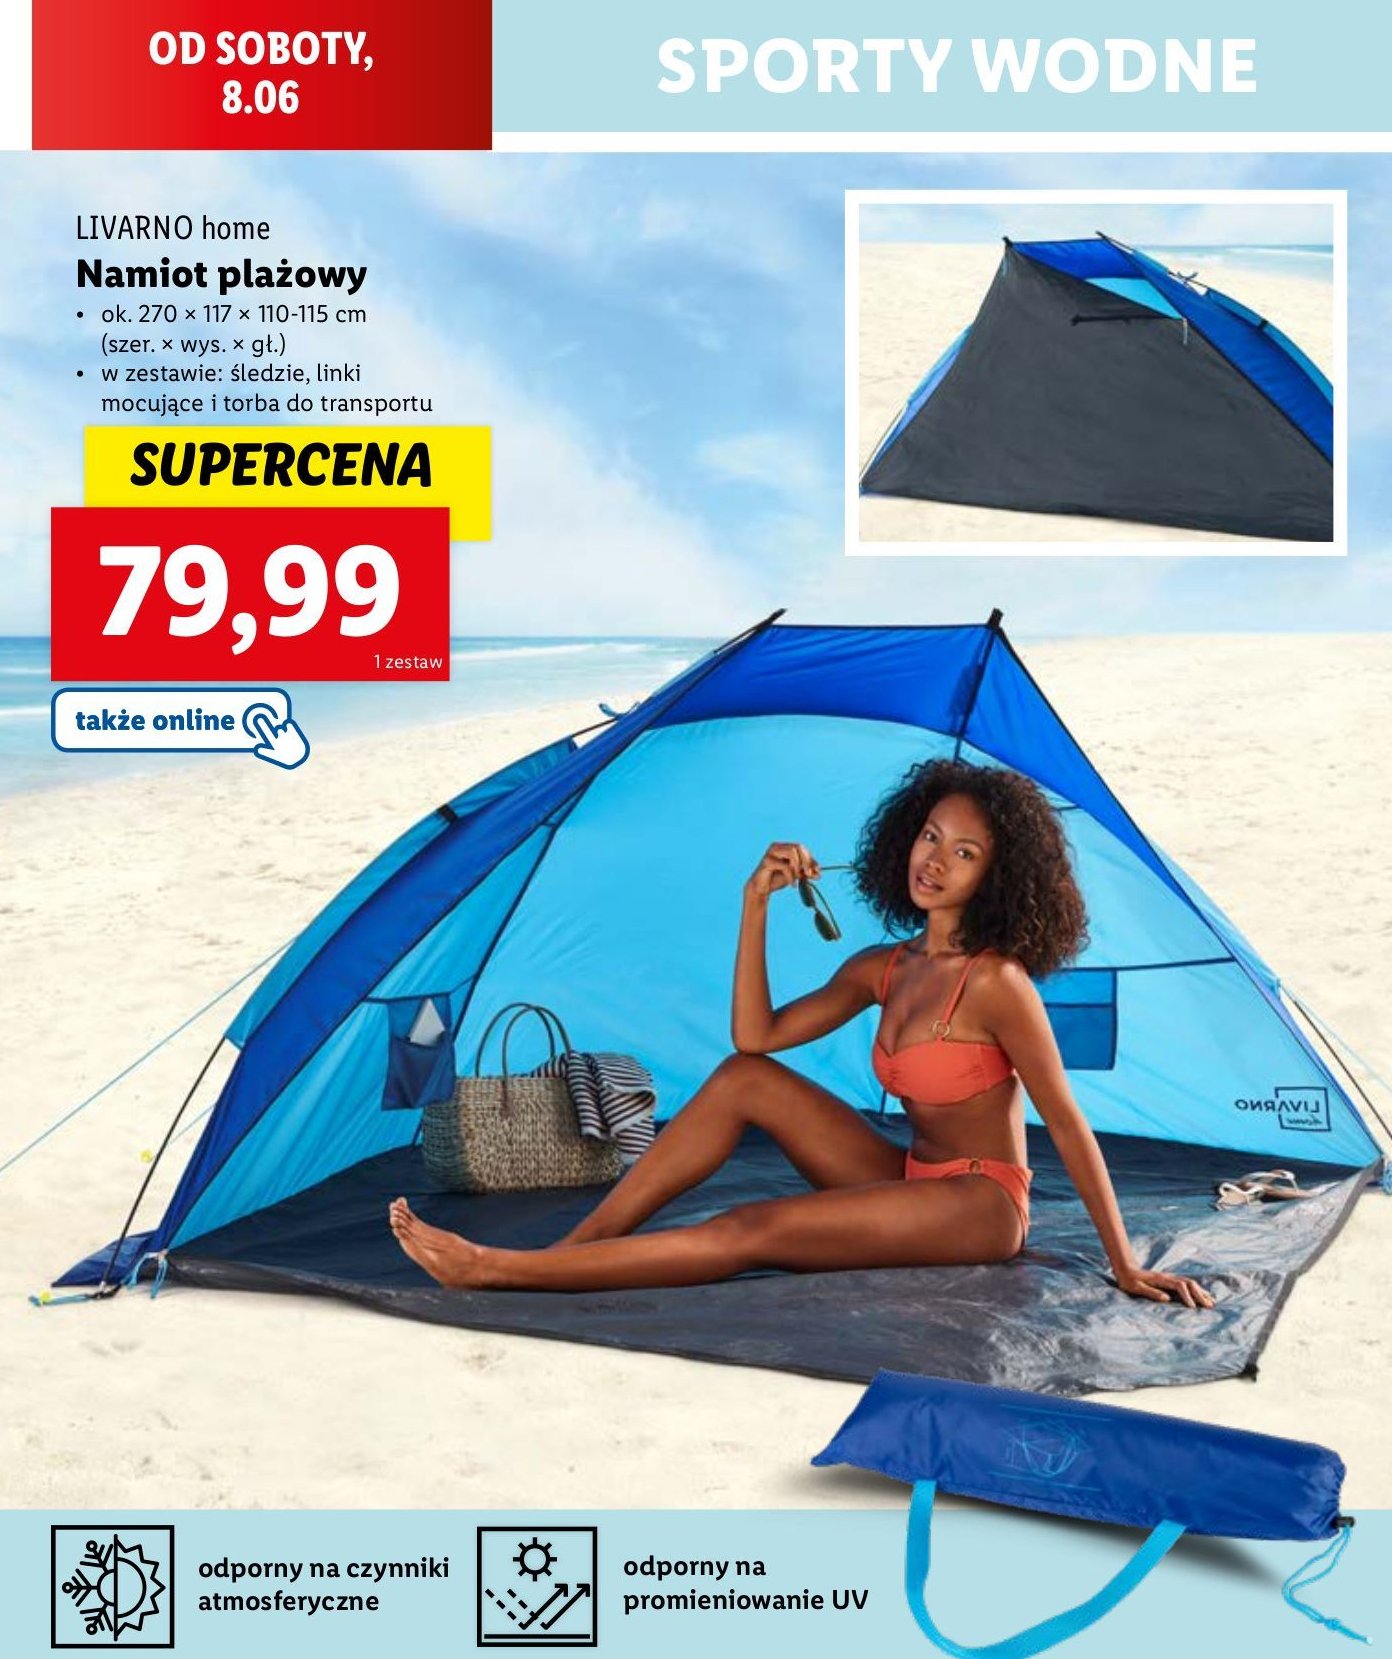 Namiot plażowy 270 x 117 x 110 -115 cm LIVARNO HOME promocja